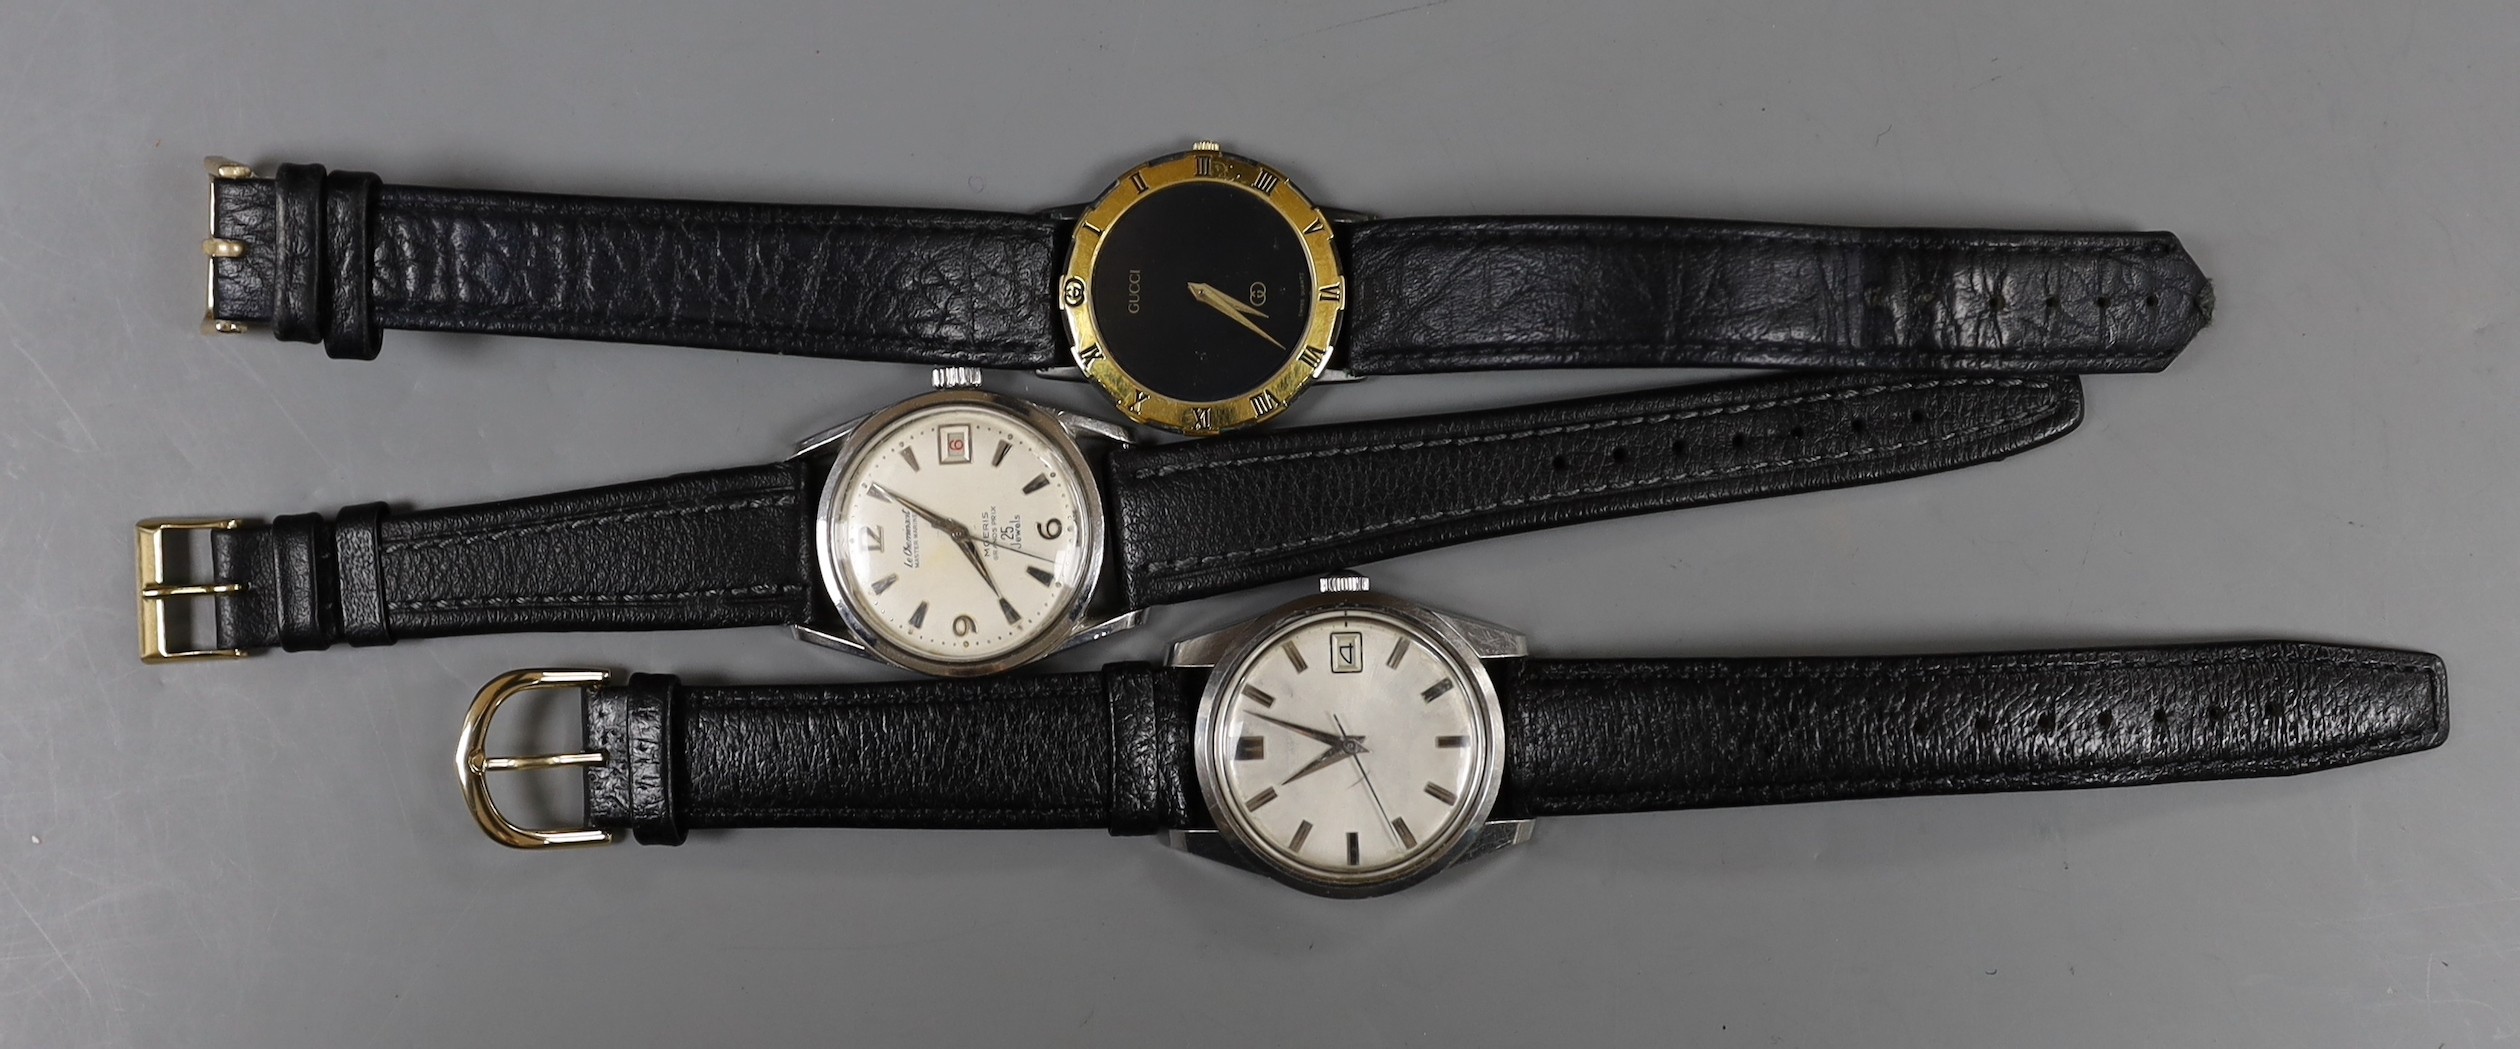 A gentleman's steel Le Chamois wrist watch, a gentleman's gold plated Gucci wrist watch and a gentleman's steel Seahorse wrist watch.